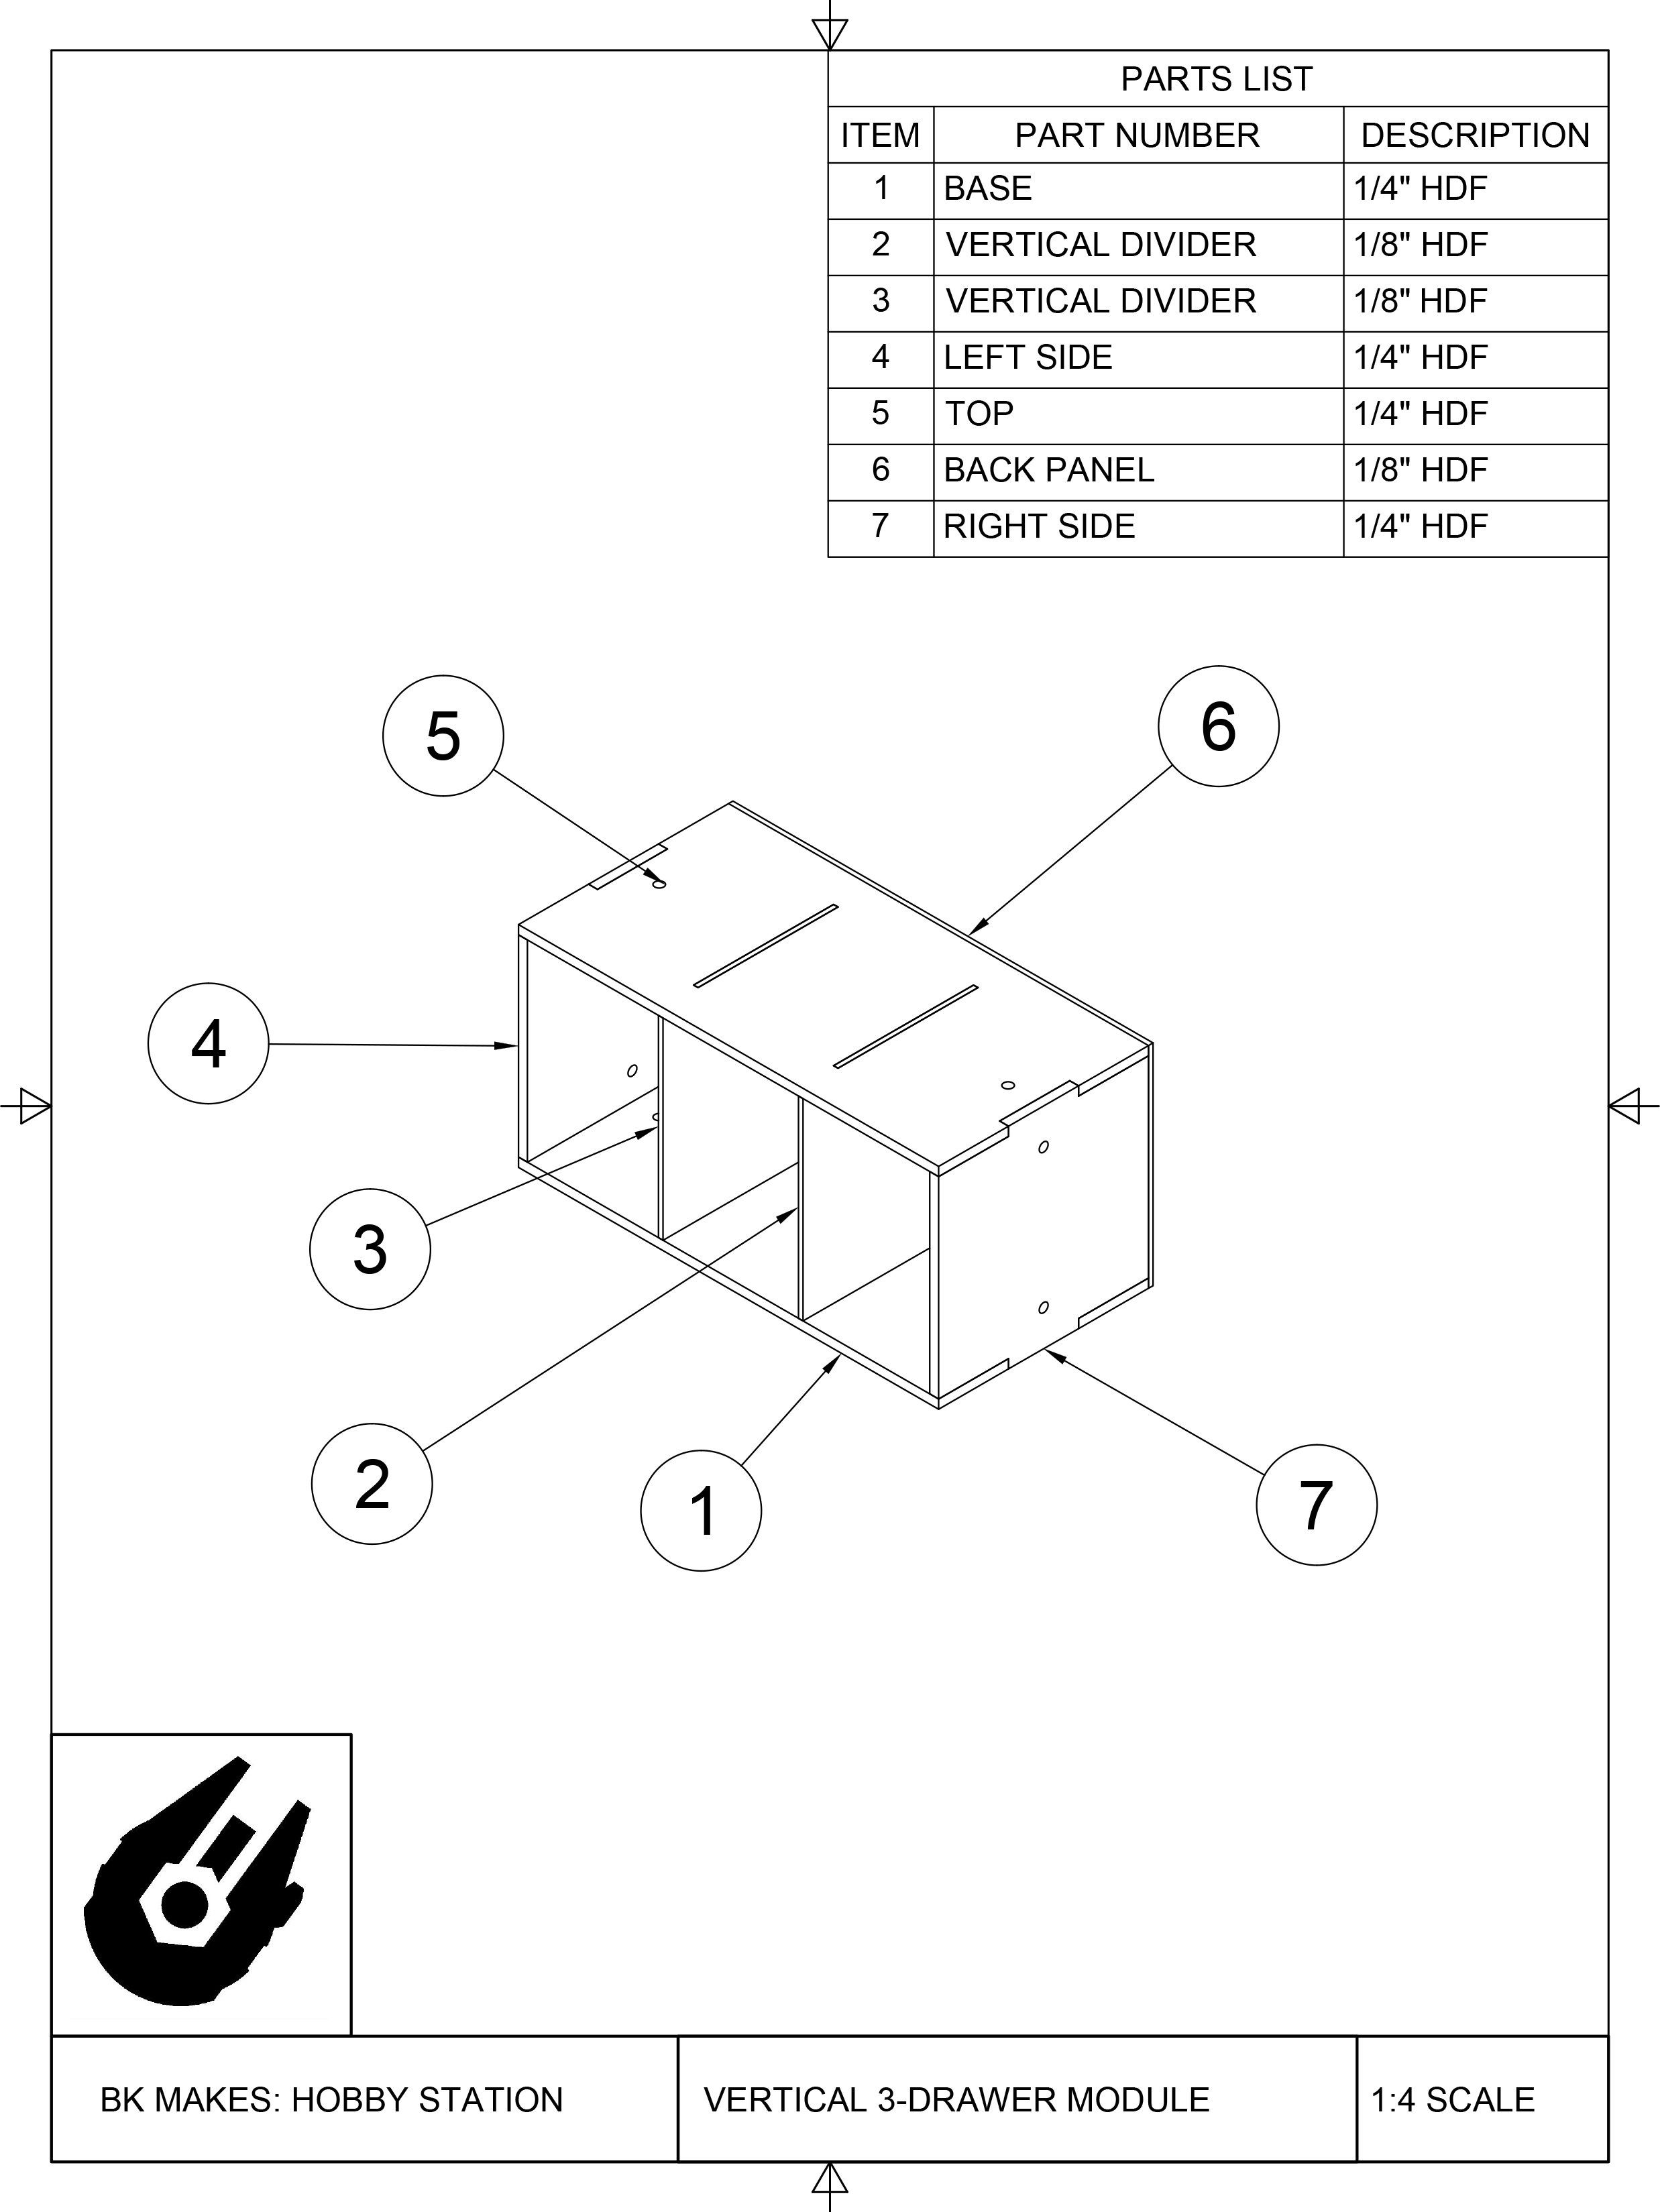 BK MAKES Vertical 3-Drawer Module Assembly Sheet.jpg